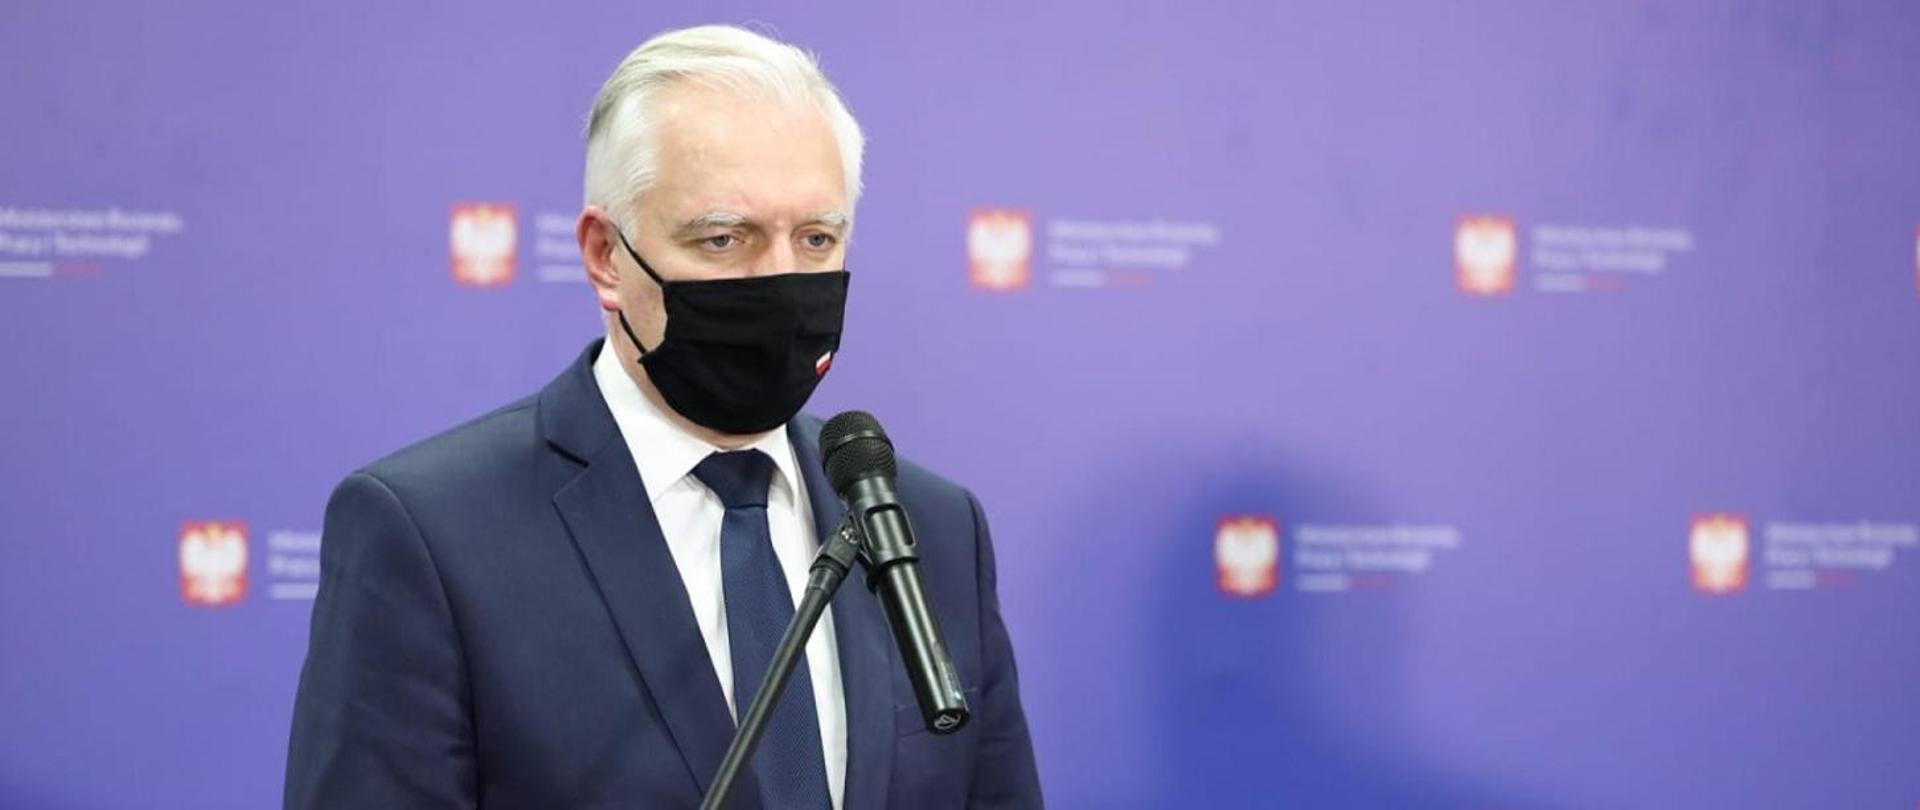 says Deputy Prime Minister Jarosław Gowin speaking 